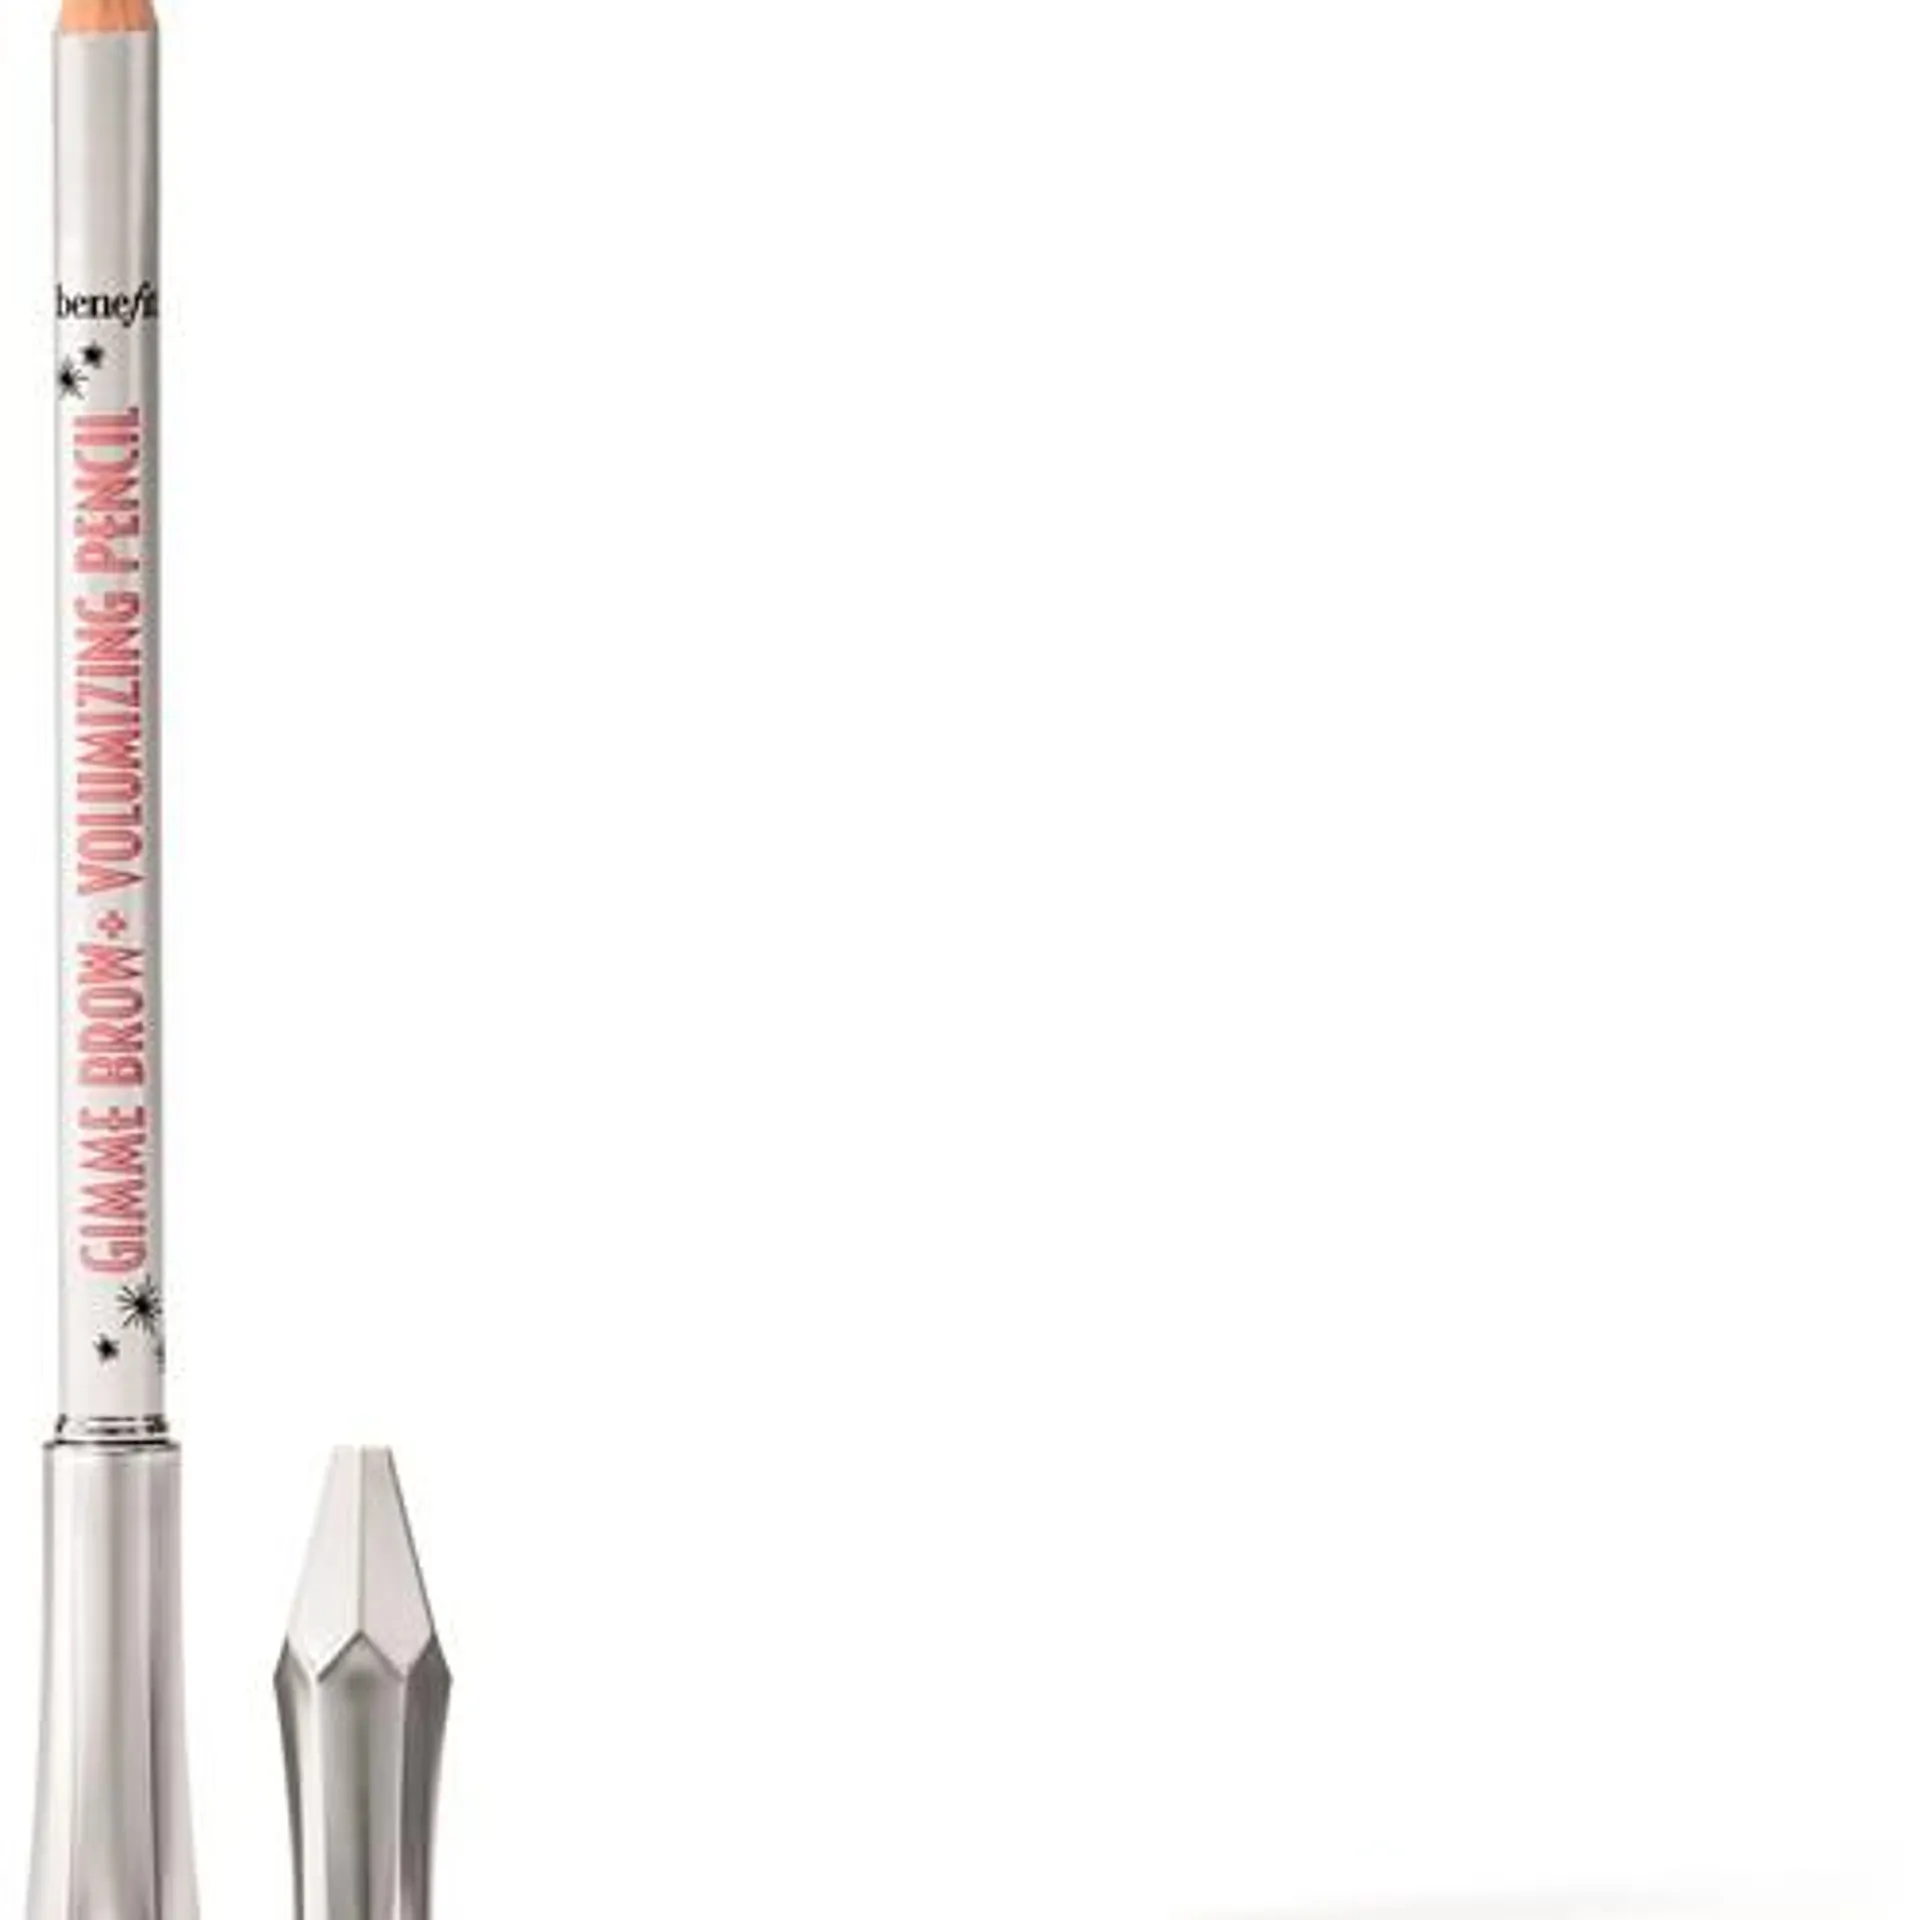 Benefit Gimme Brow+ Volumizing Pencil Volumizing Brow Pencil 1 Cool Light Blonde 1.2g